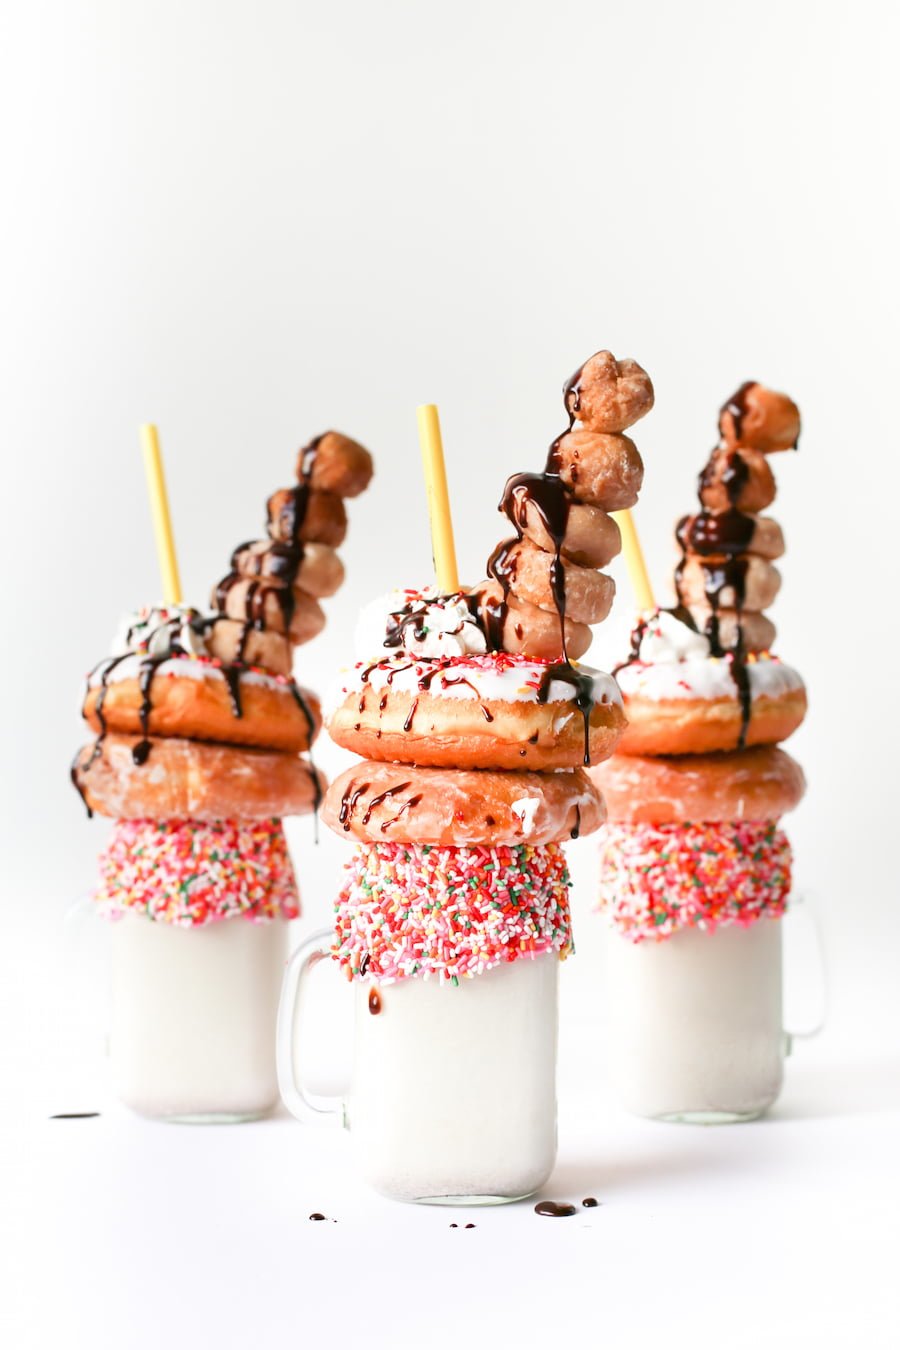 Over-the-Top Donut Milkshake, Freakshake, Breakfast Milkshake, Decadent Donut Milkshake, Donut Dessert, Milkshake, Dessert Recipe, Dessert for Sharing